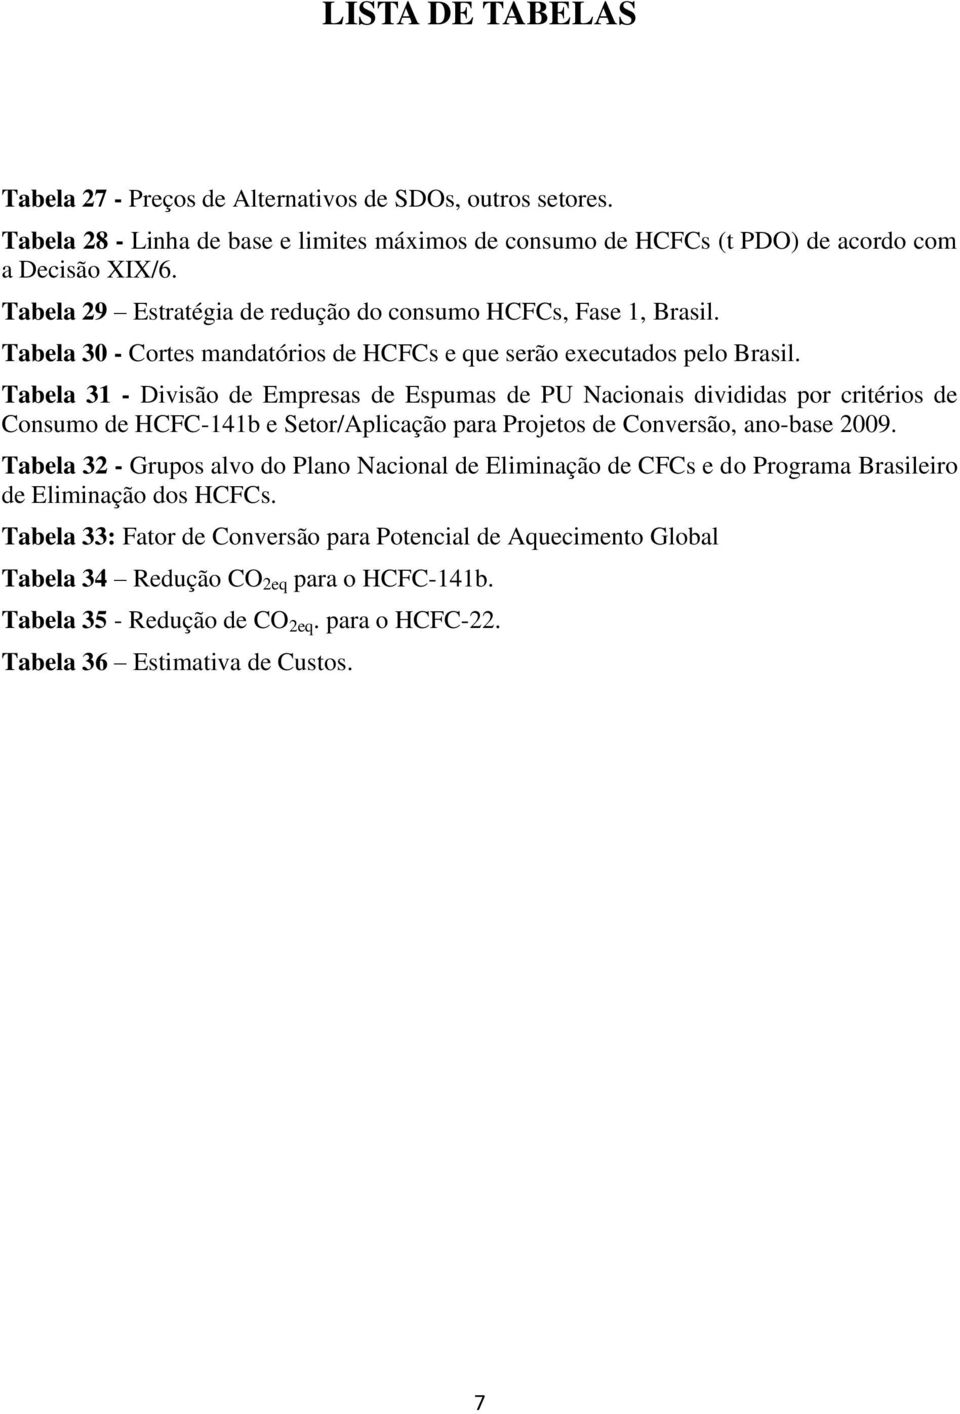 Tabela 31 - Divisão de Empresas de Espumas de PU Nacionais divididas por critérios de Consumo de HCFC-141b e Setor/Aplicação para Projetos de Conversão, ano-base 2009.